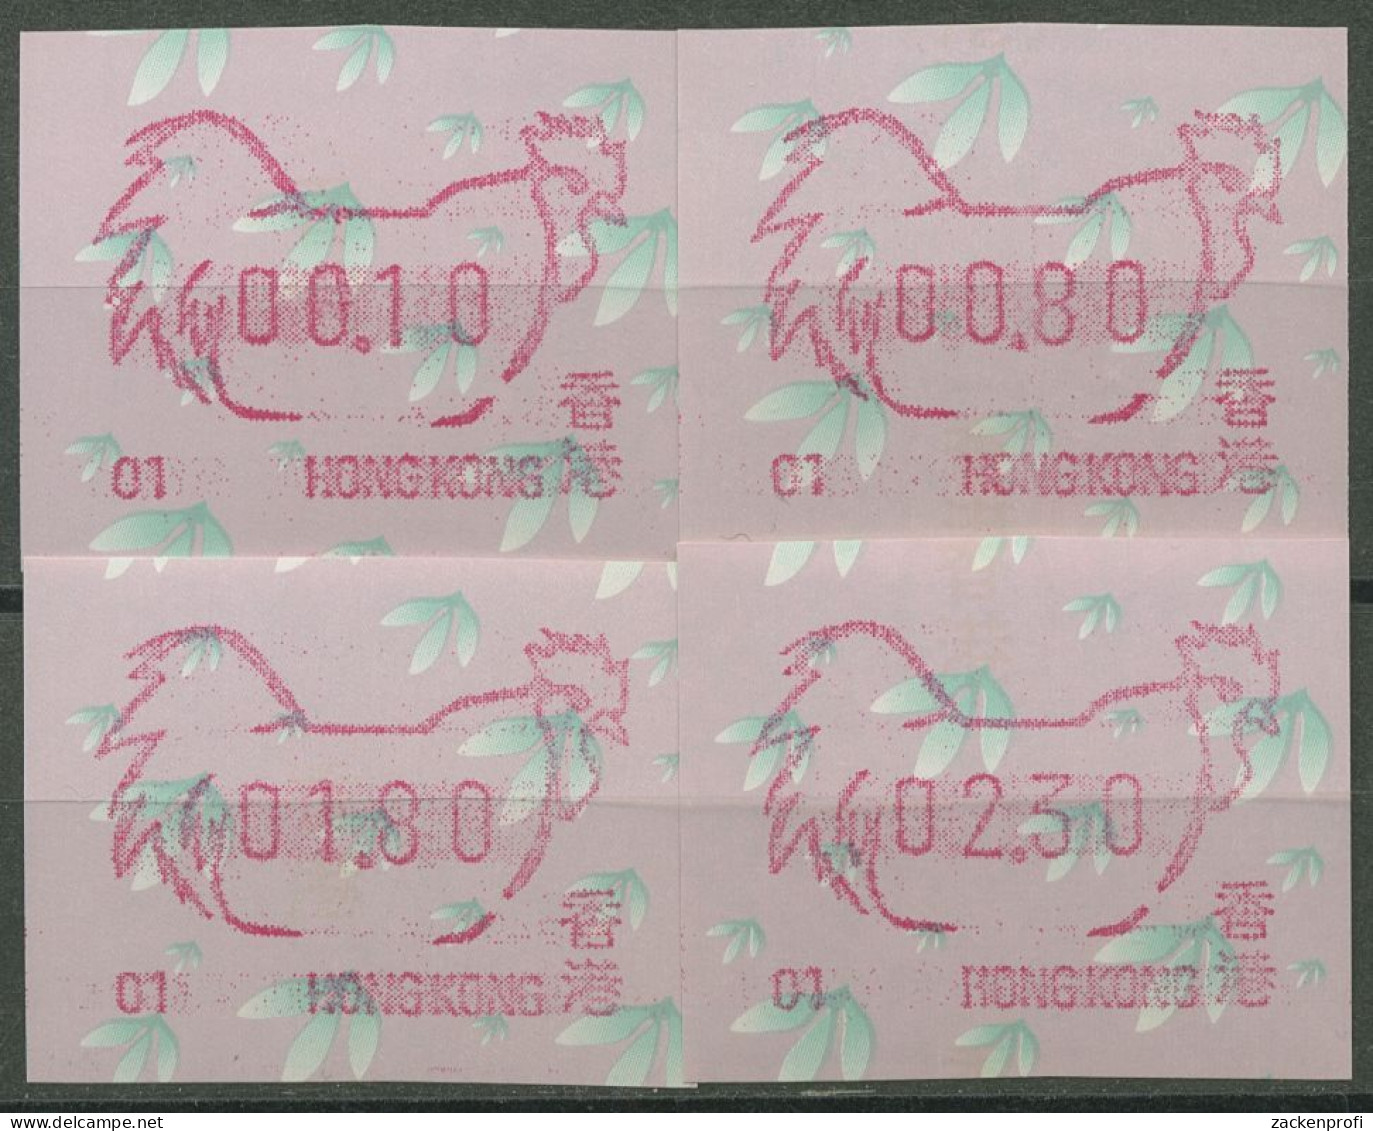 Hongkong 1993 Jahr Des Hahnes Automatenmarke 8.1 S1.1 Automat 01 Postfrisch - Automaten